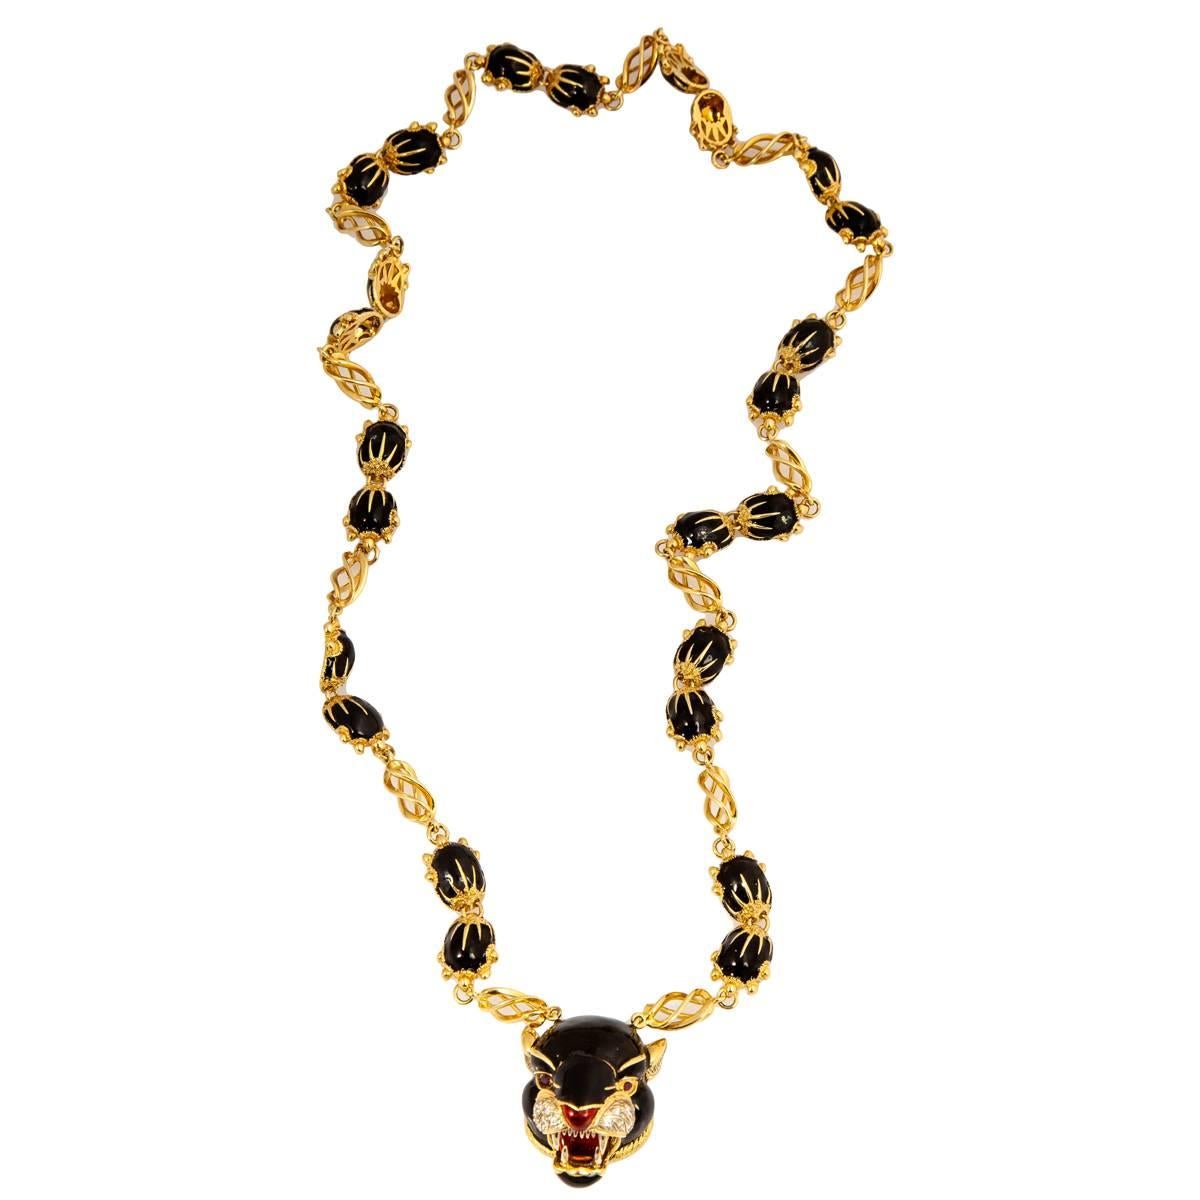 Frascorolo Jaguar Panther Black And Red Enamel Gold Necklace